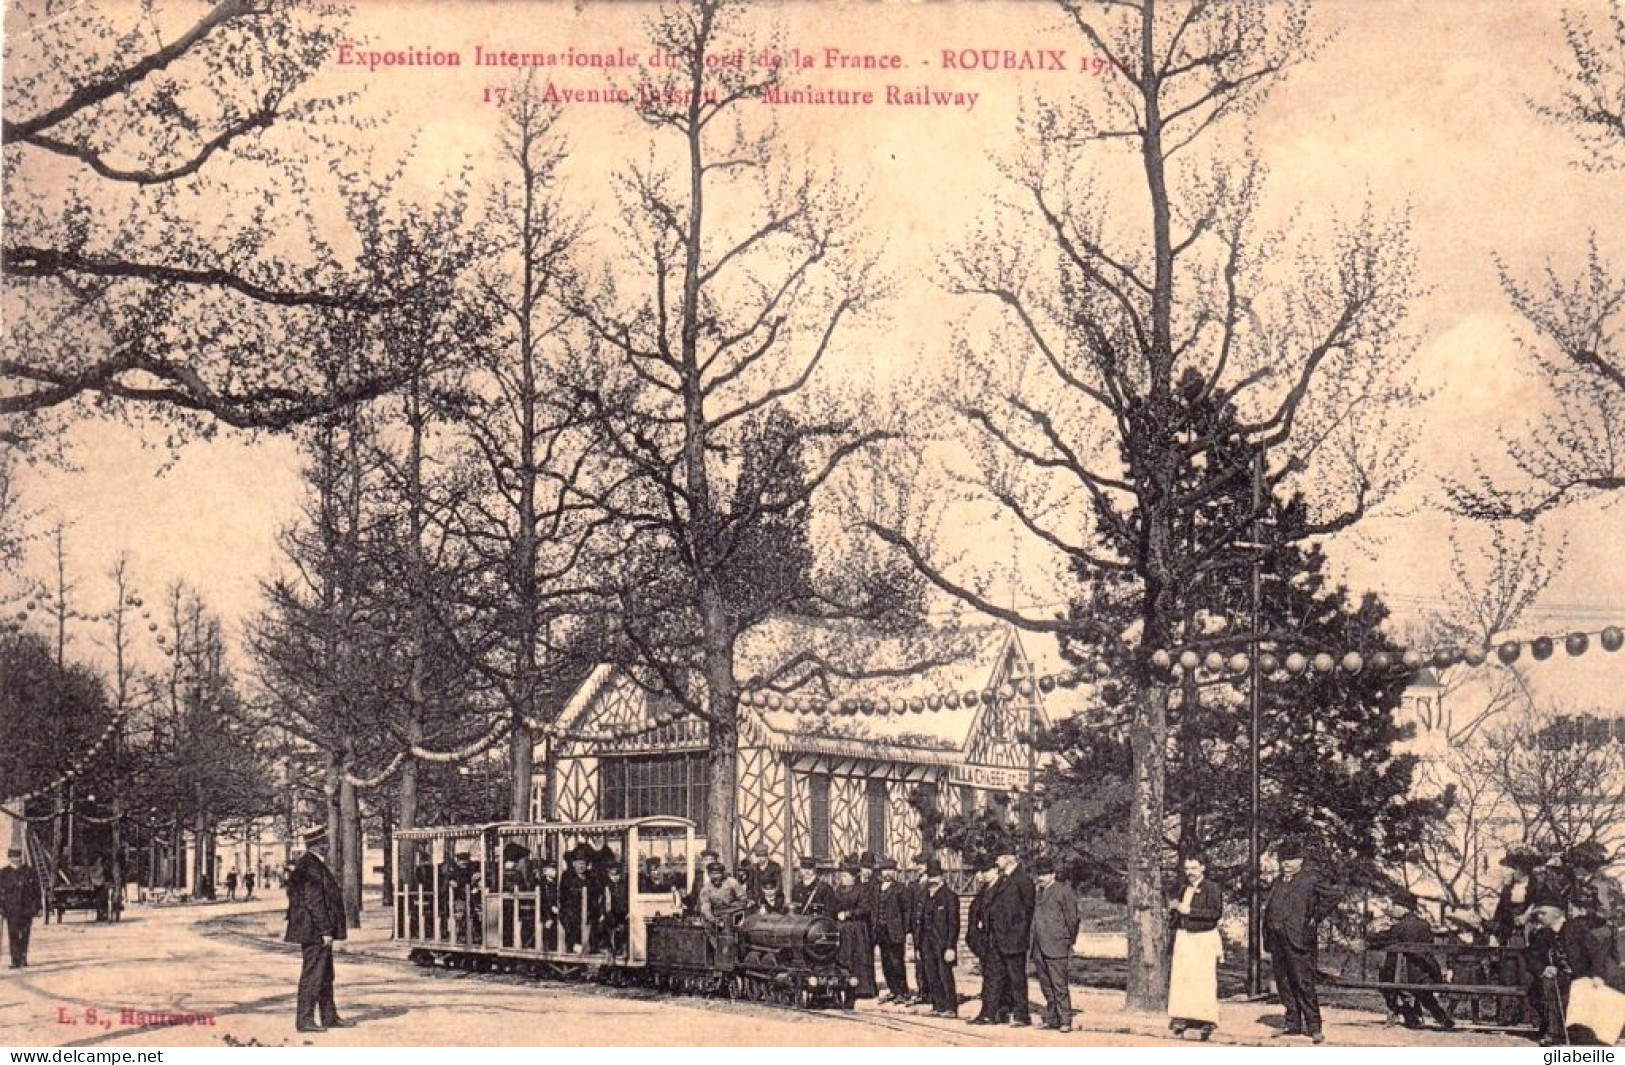 59 - ROUBAIX - Exposition Internationale Du Nord De La France - Avenue Jussieu -  Miniature Railway - Roubaix